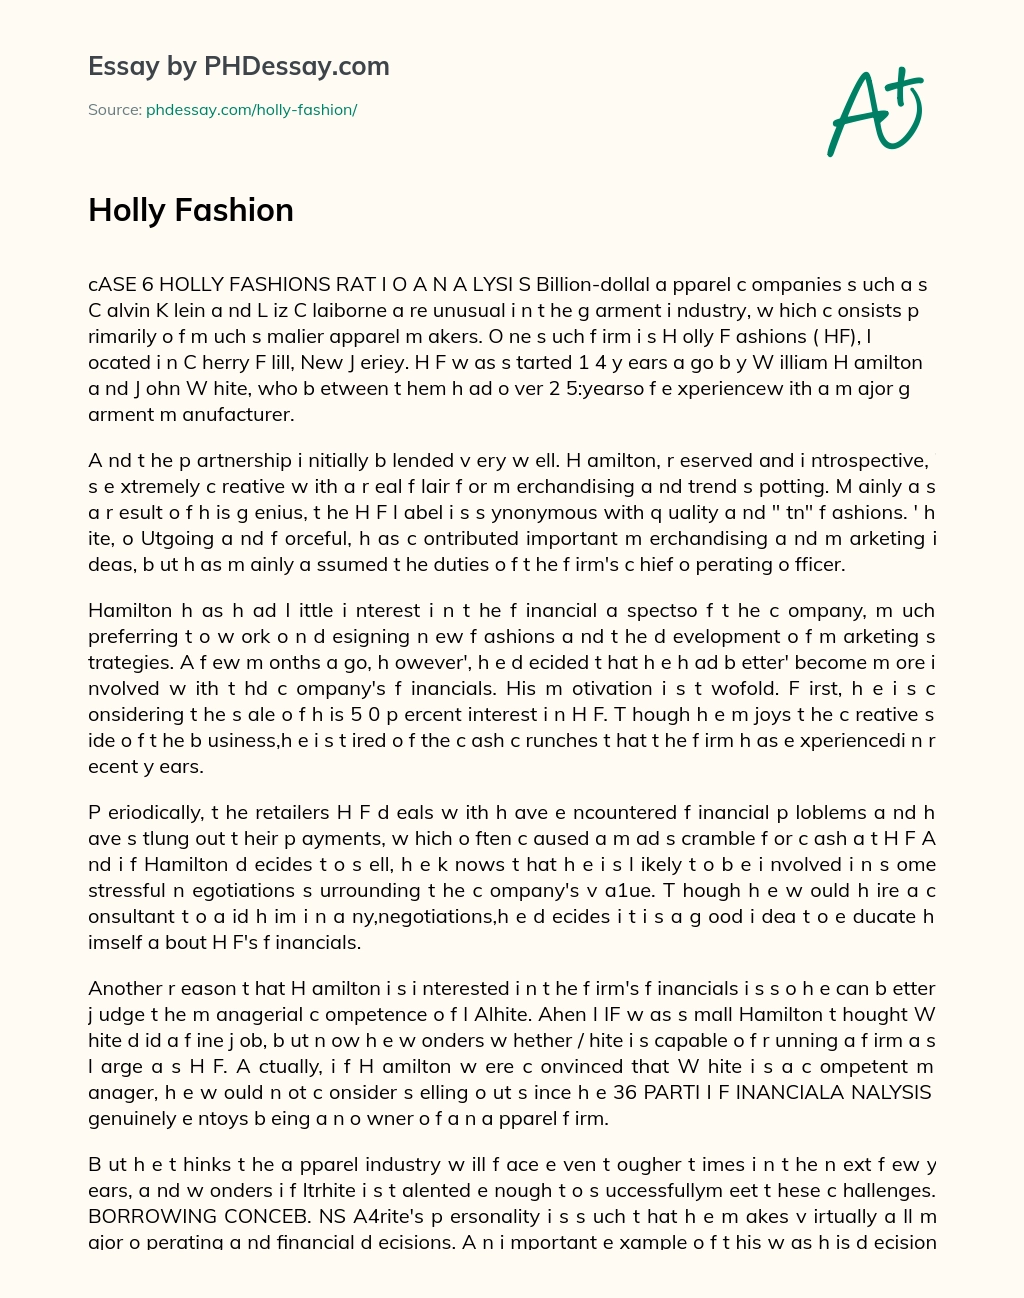 Holly Fashion essay